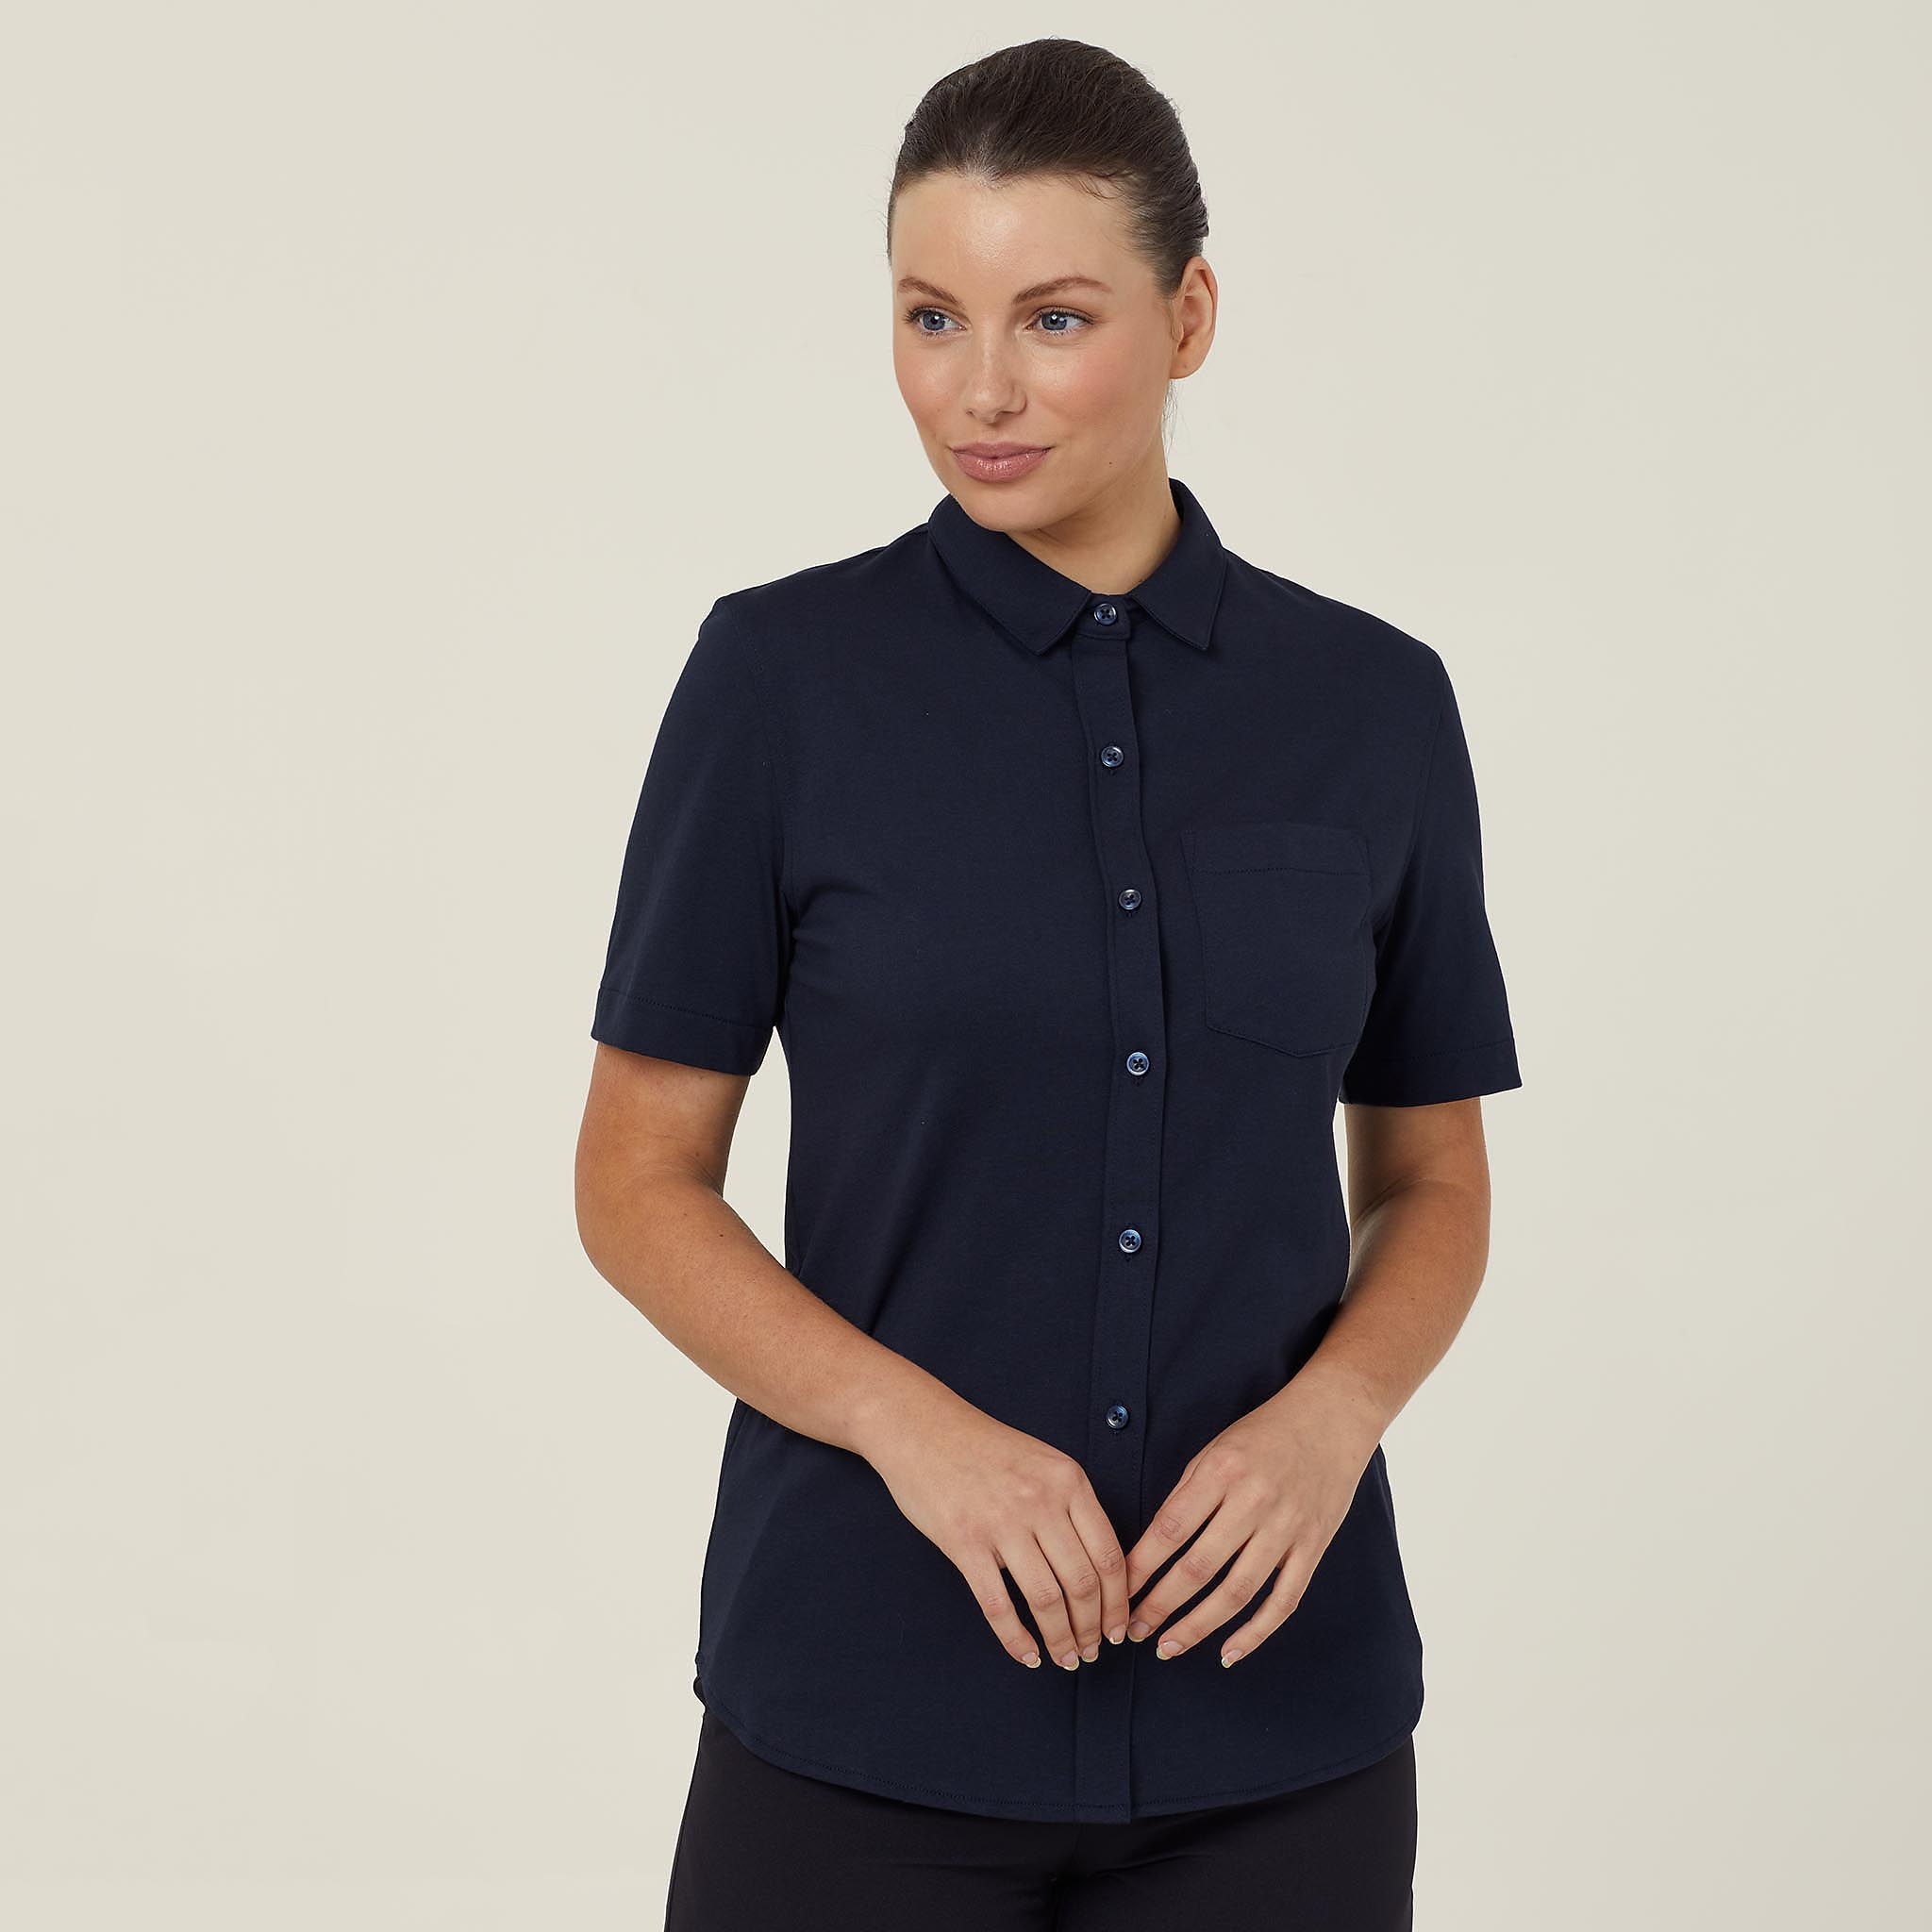 Britt Jersey Antibacterial Short Sleeve Shirt, navy | NNT Uniforms